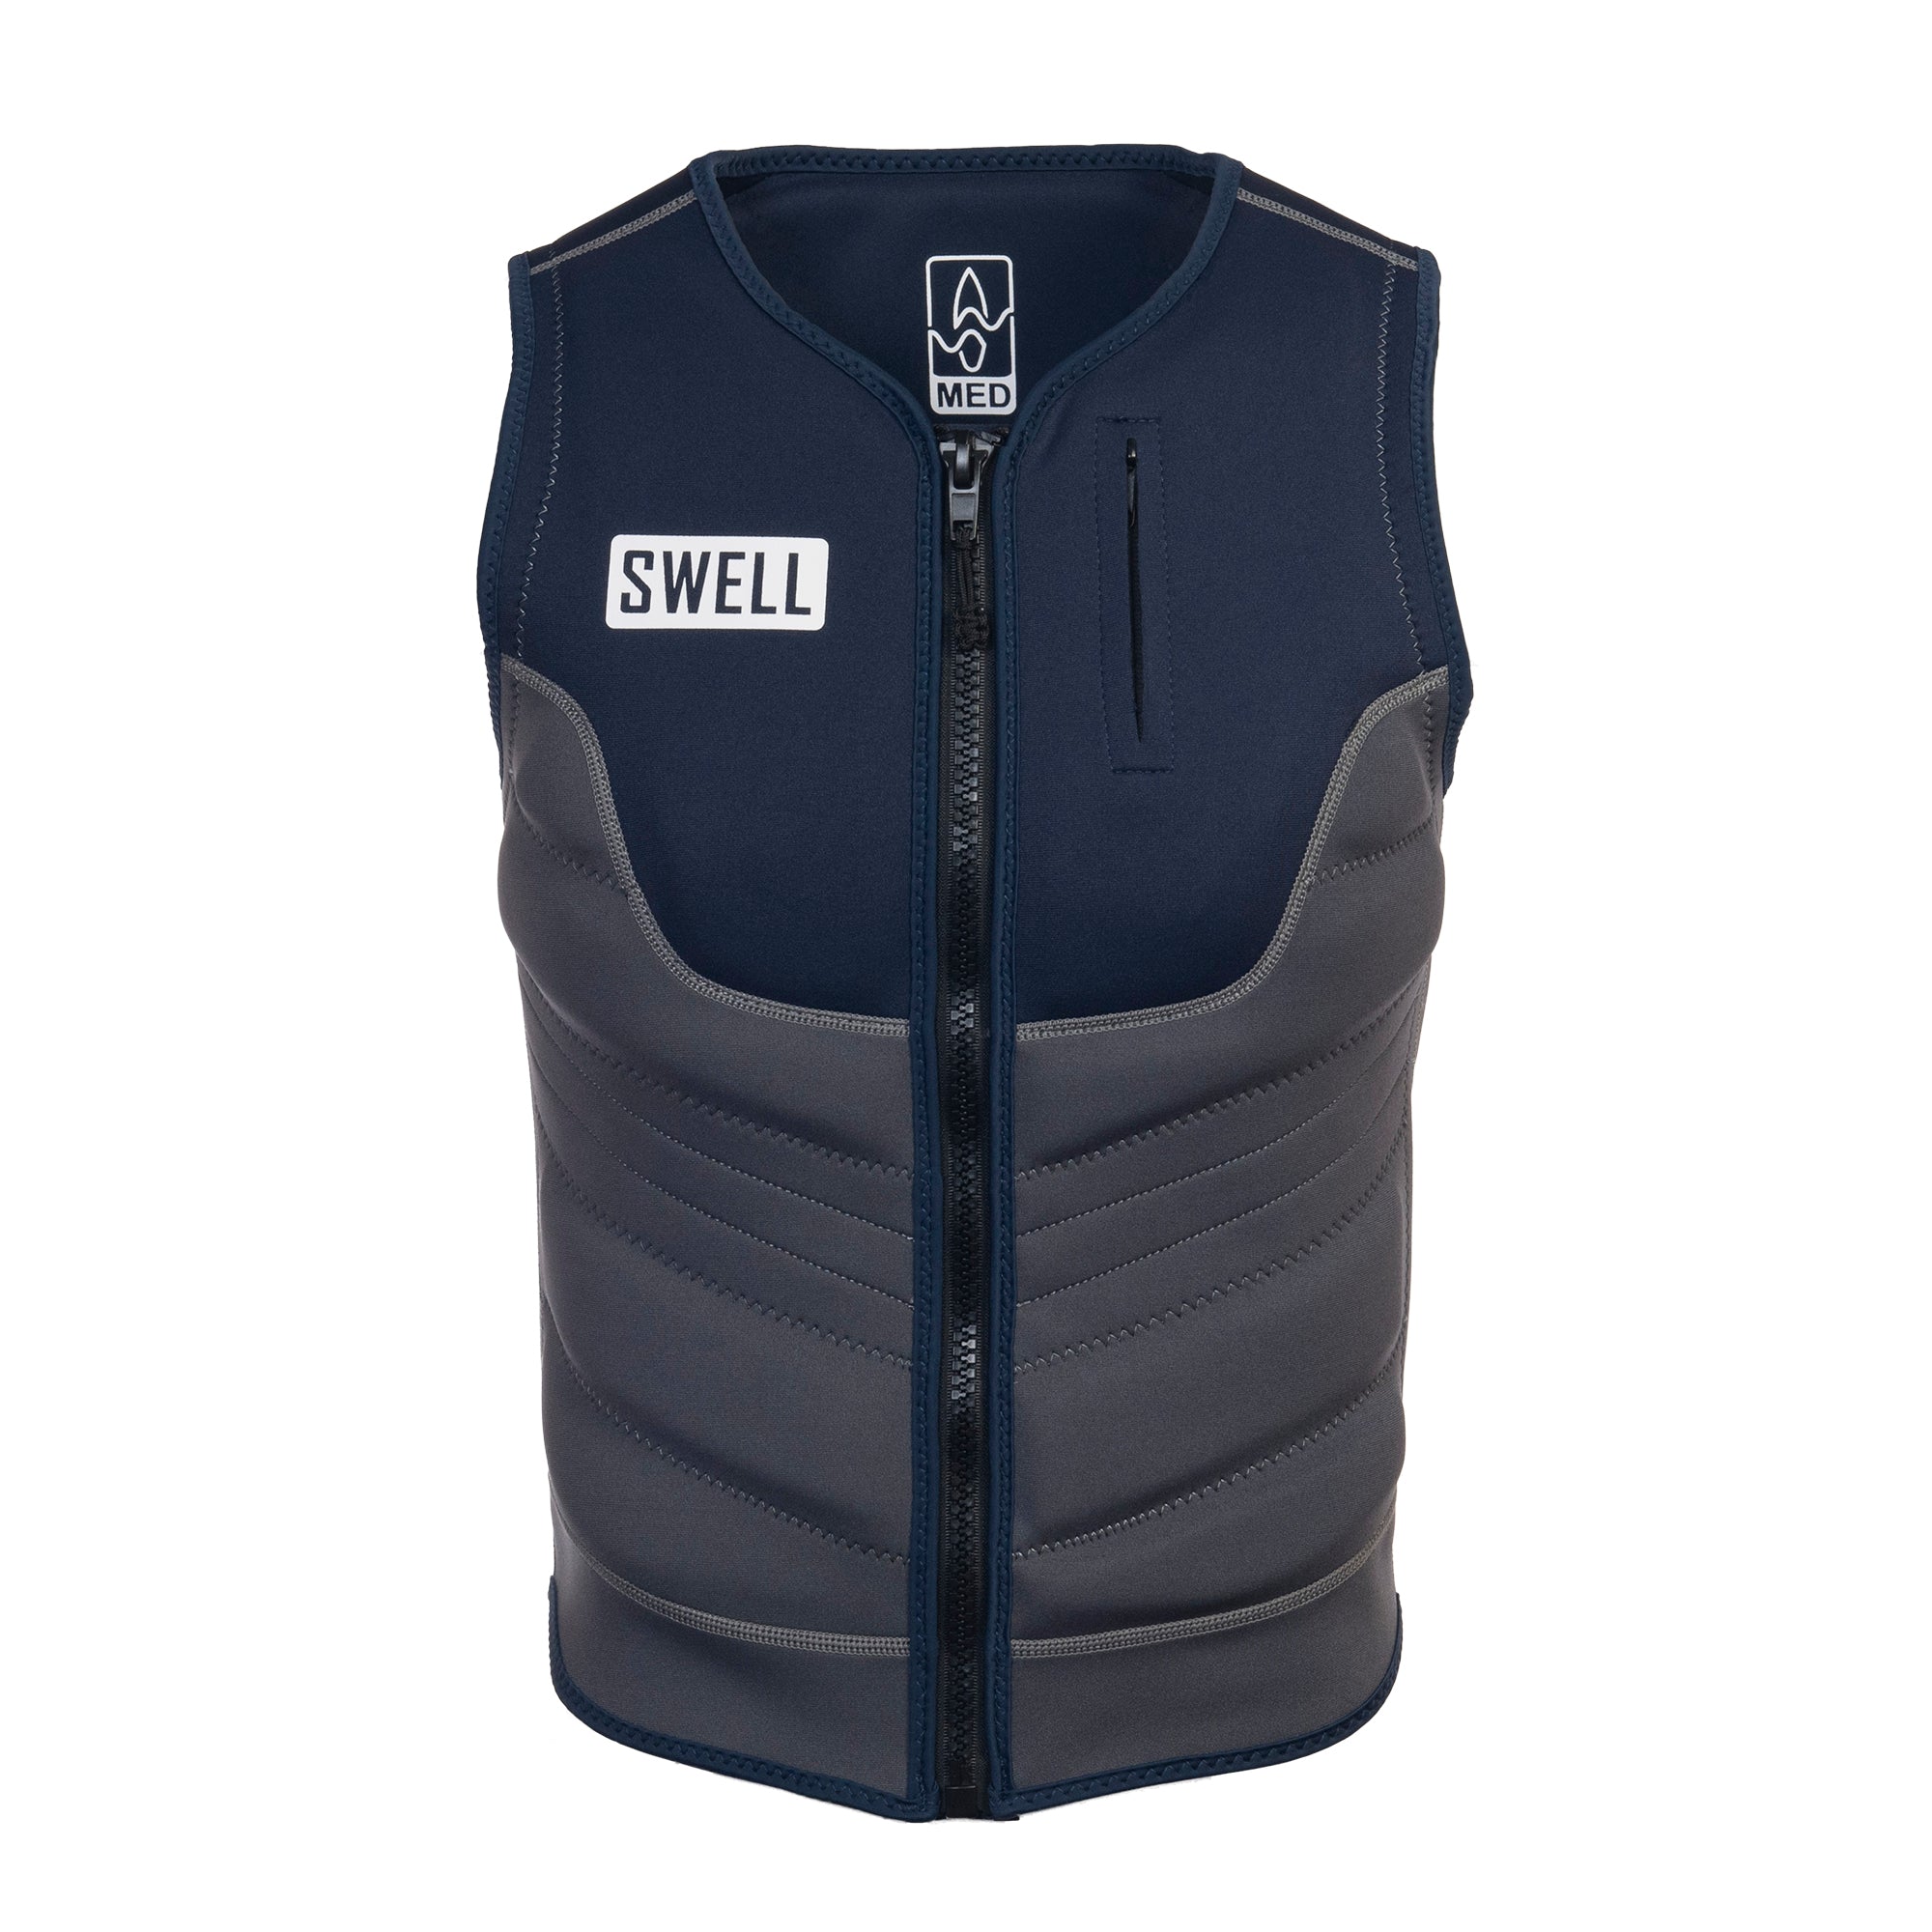 SWELL Comp Vest - Men's Navy -  Neoprene Jacket